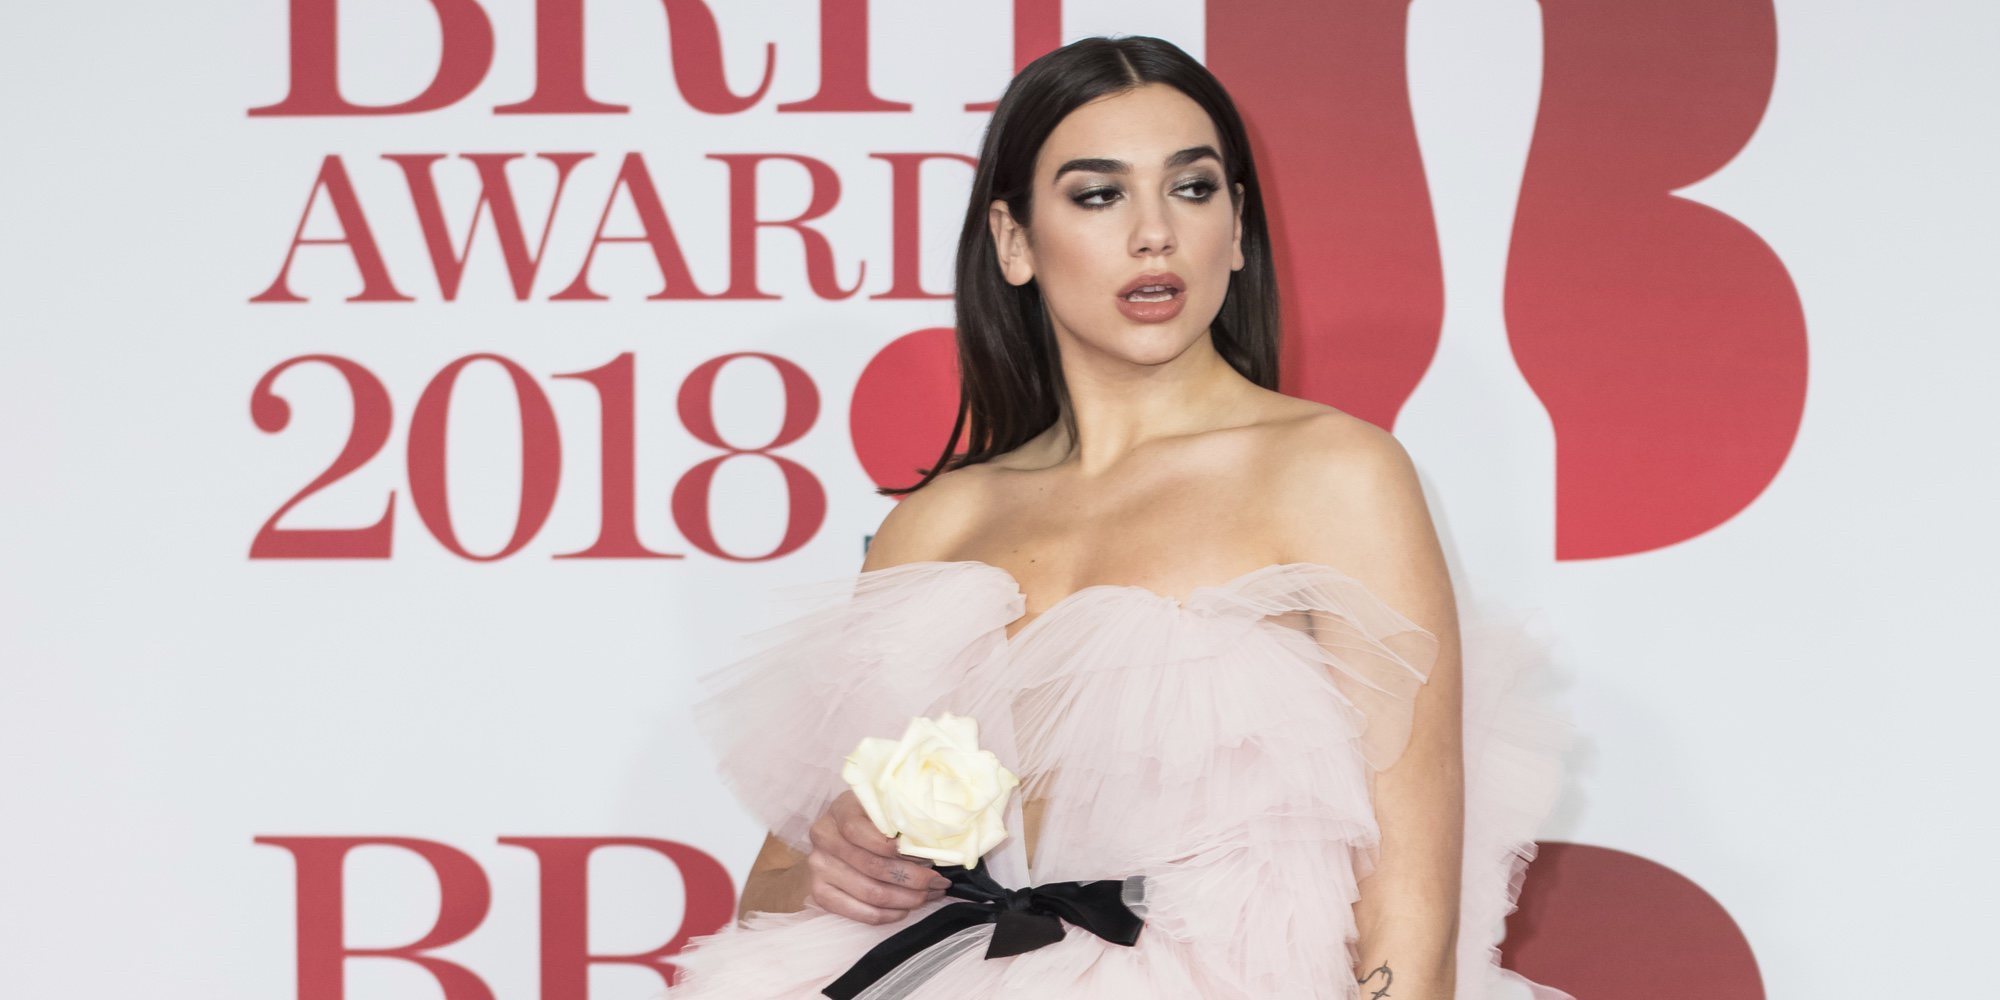 Dua Lipa se convierte en la protagonista de los Brit Awards 2018 gracias a su reivindicativo discurso